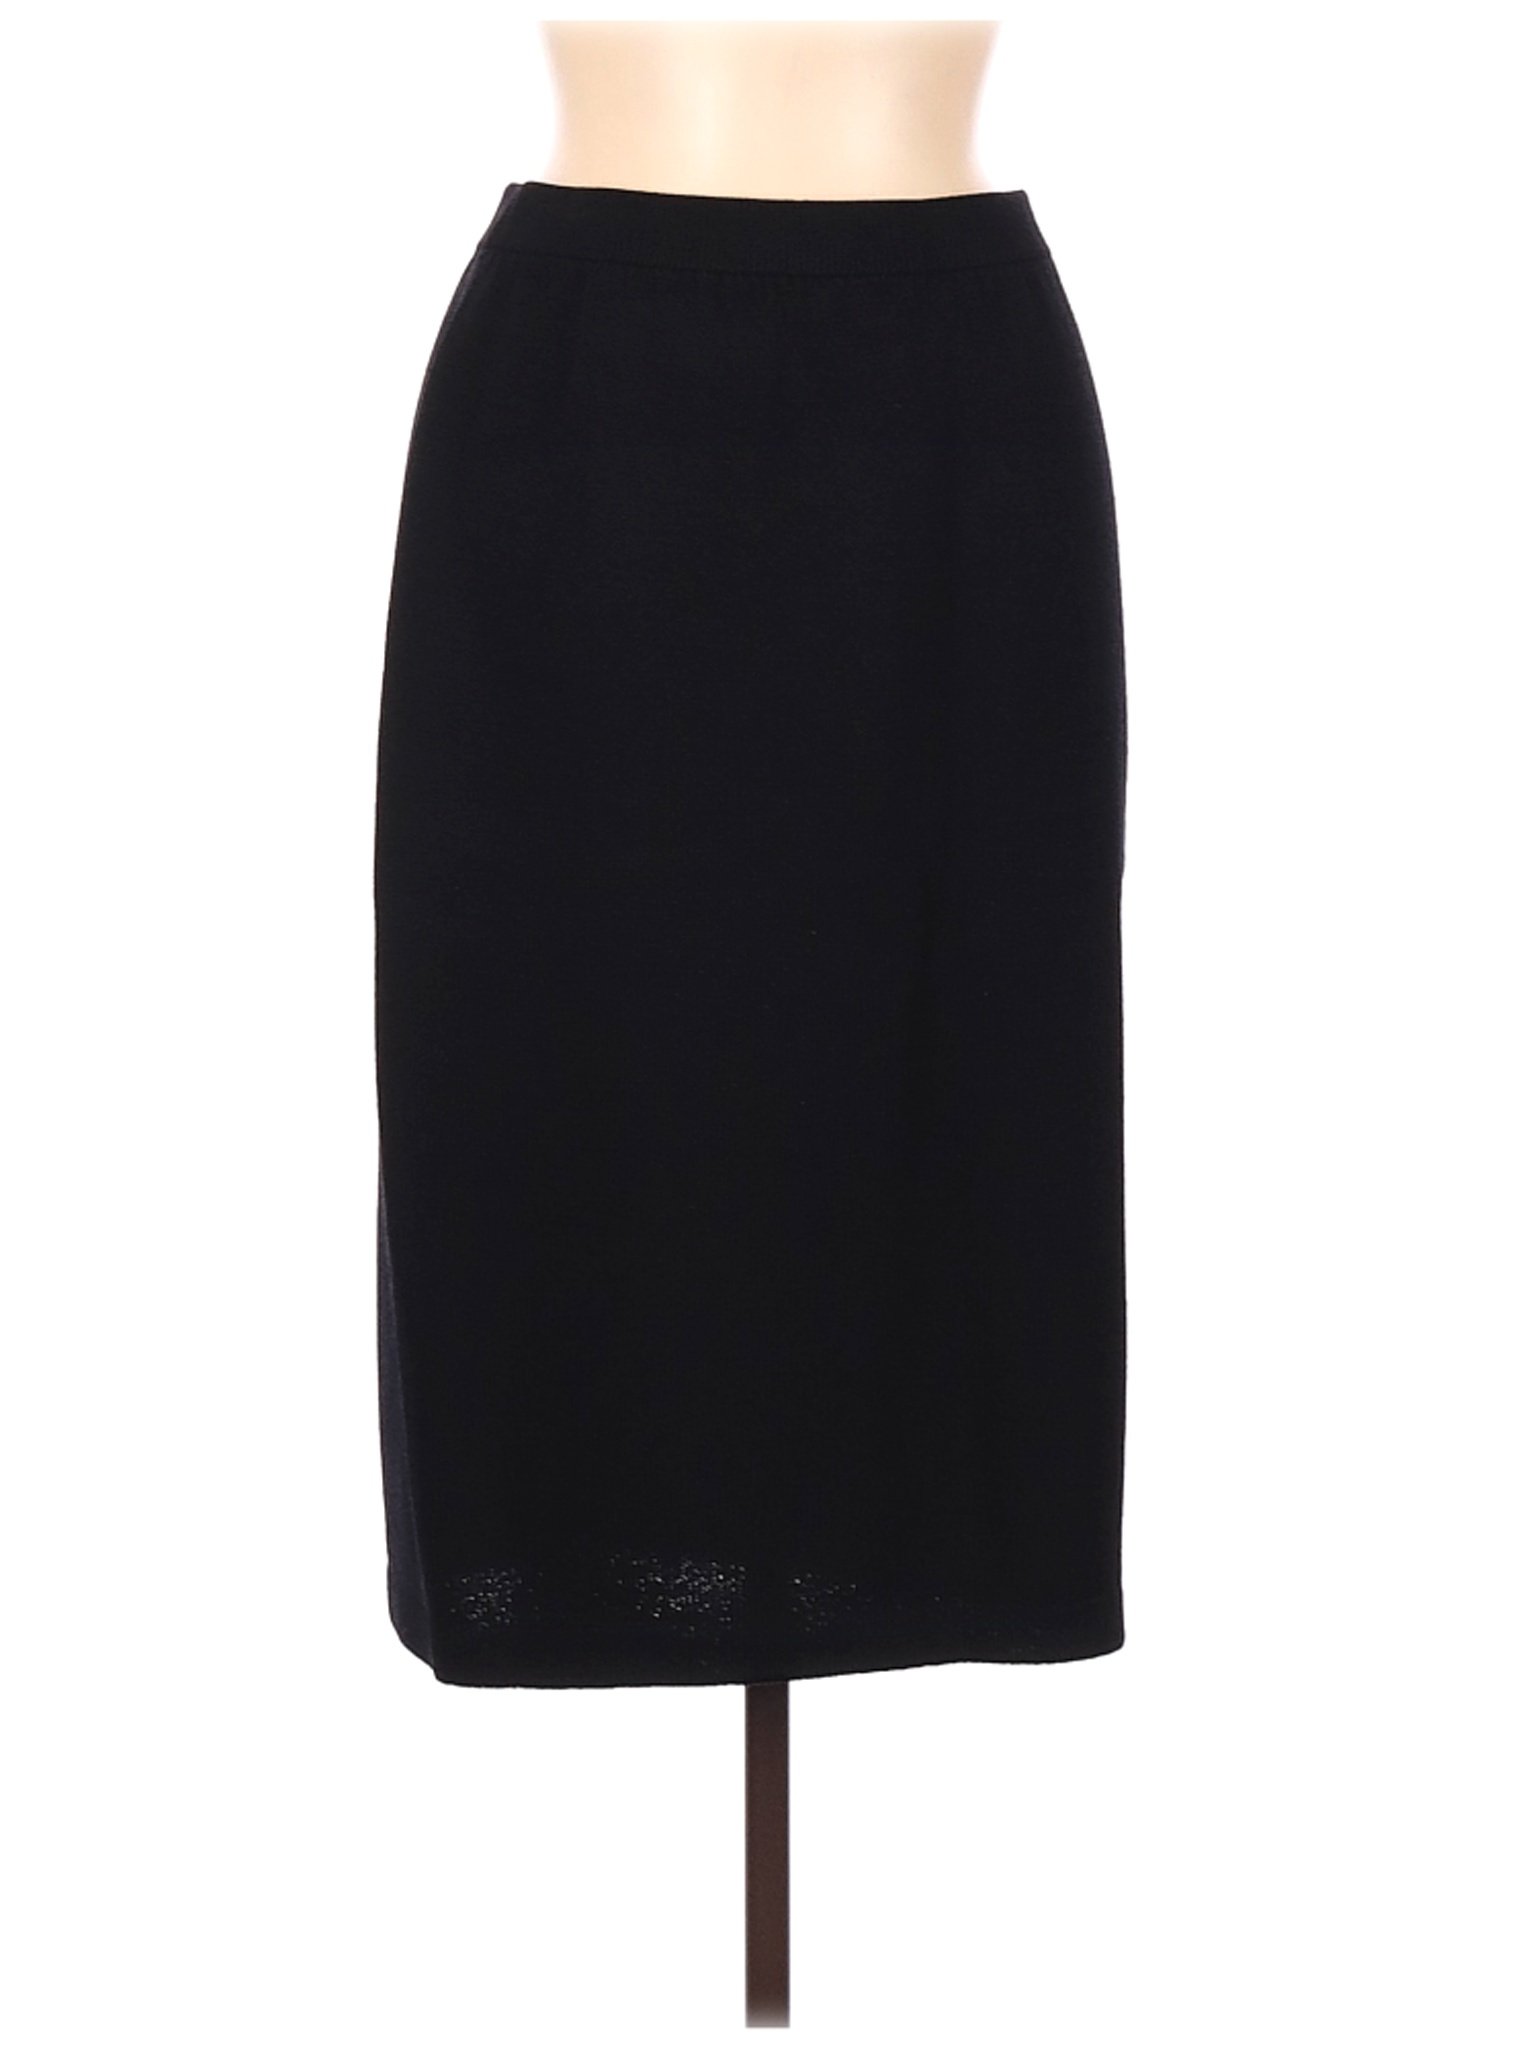 St. John Women Black Casual Skirt 8 | eBay